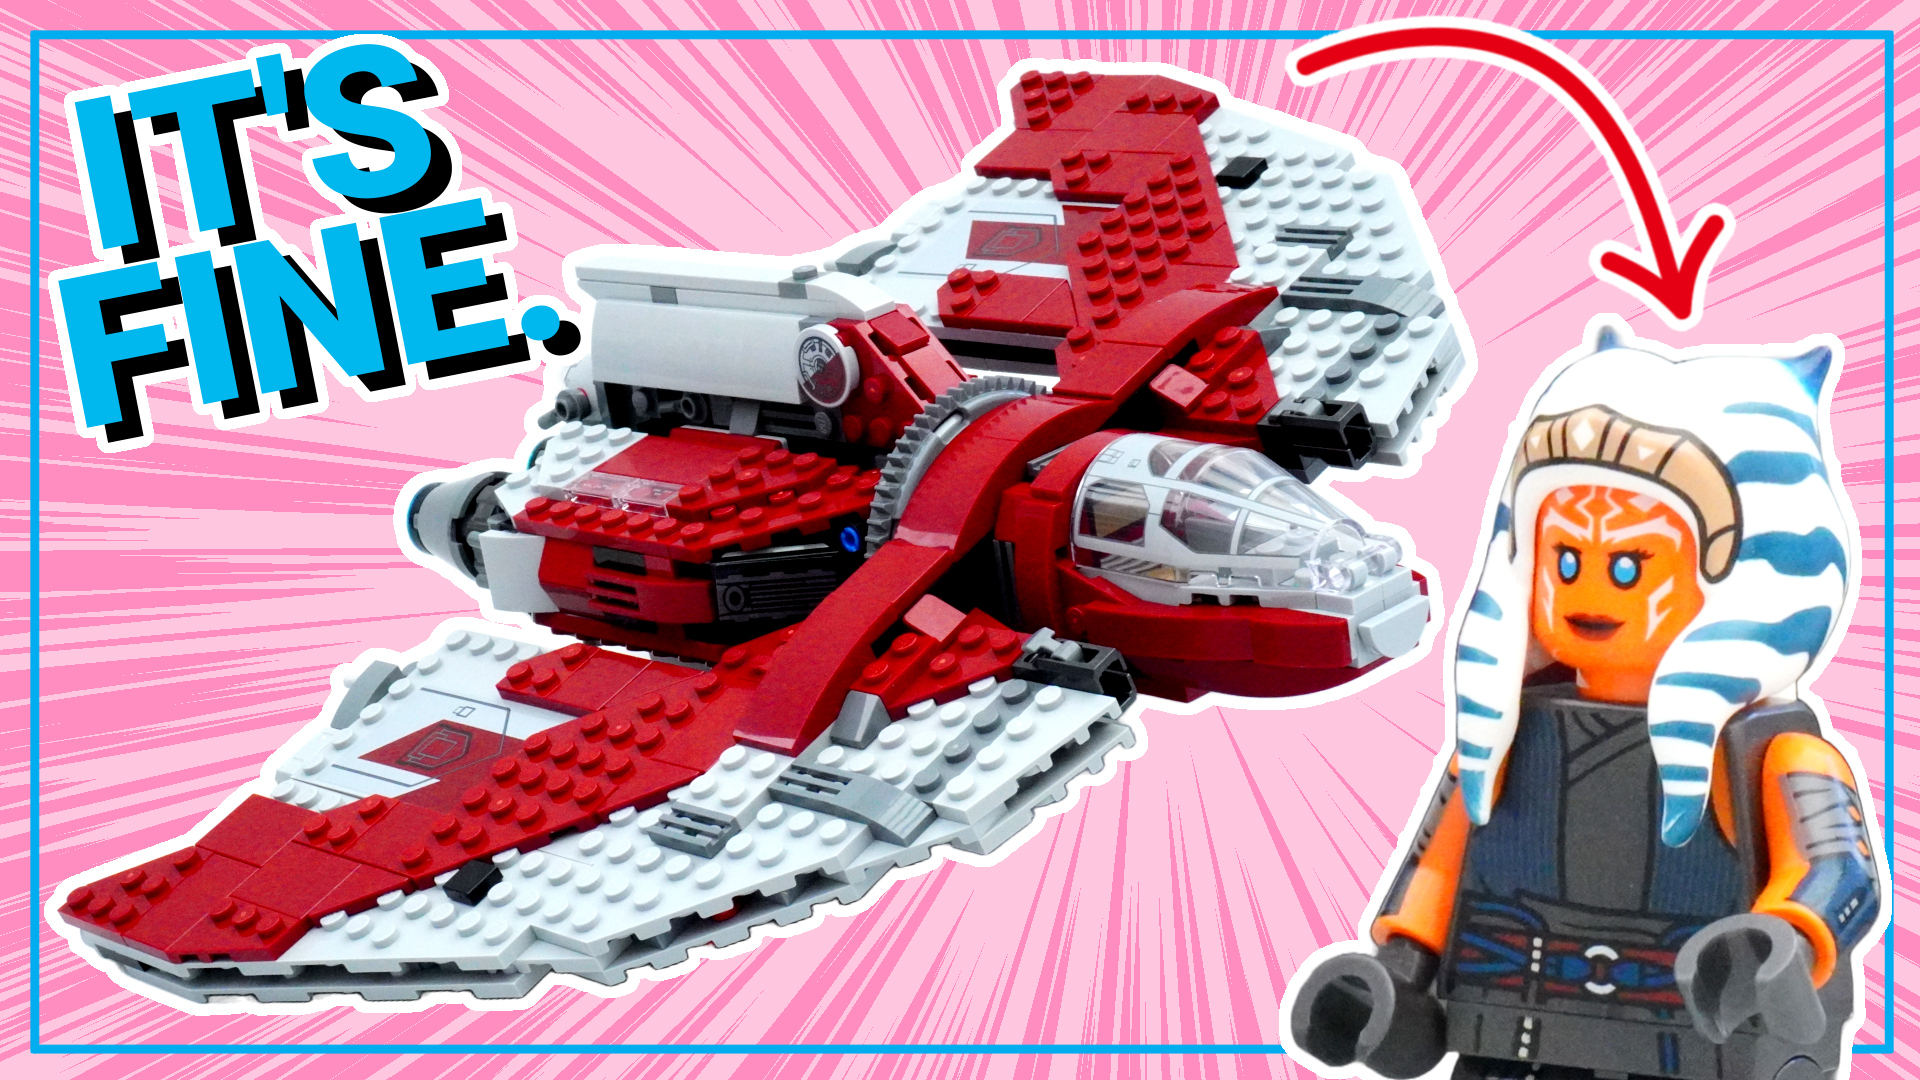 LEGO Star Wars Ahsoka Tano's T-6 Jedi Shuttle (75362). Really cool